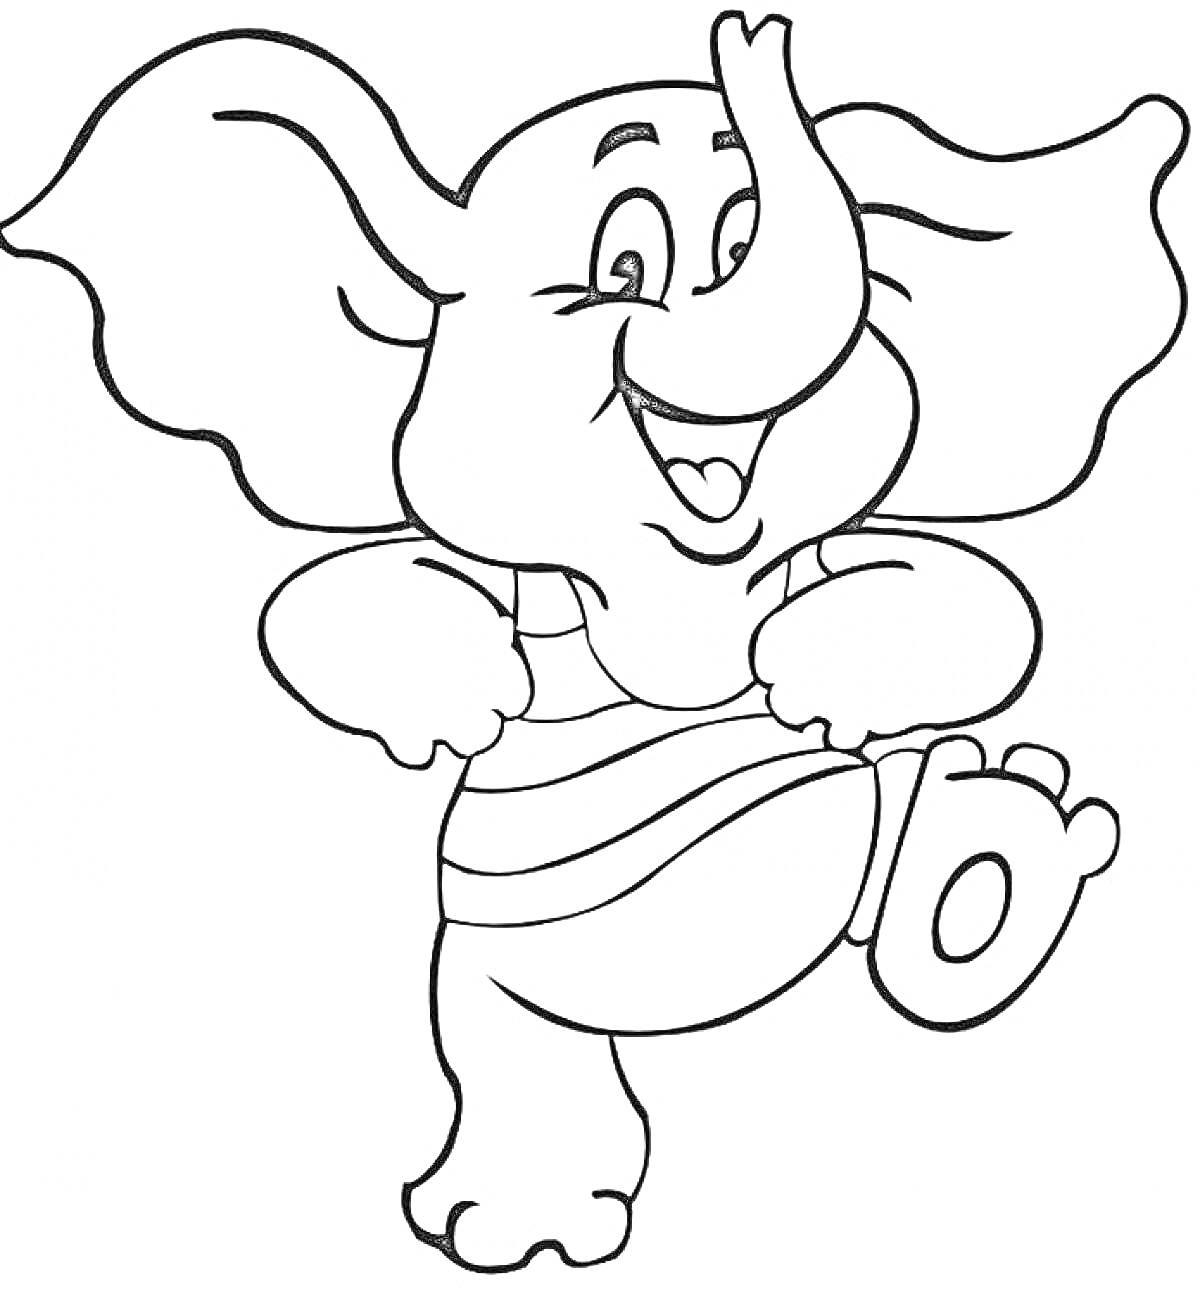 Раскраска Слон в полосатой футболке, смеется и танцует, стоя на одной ноге